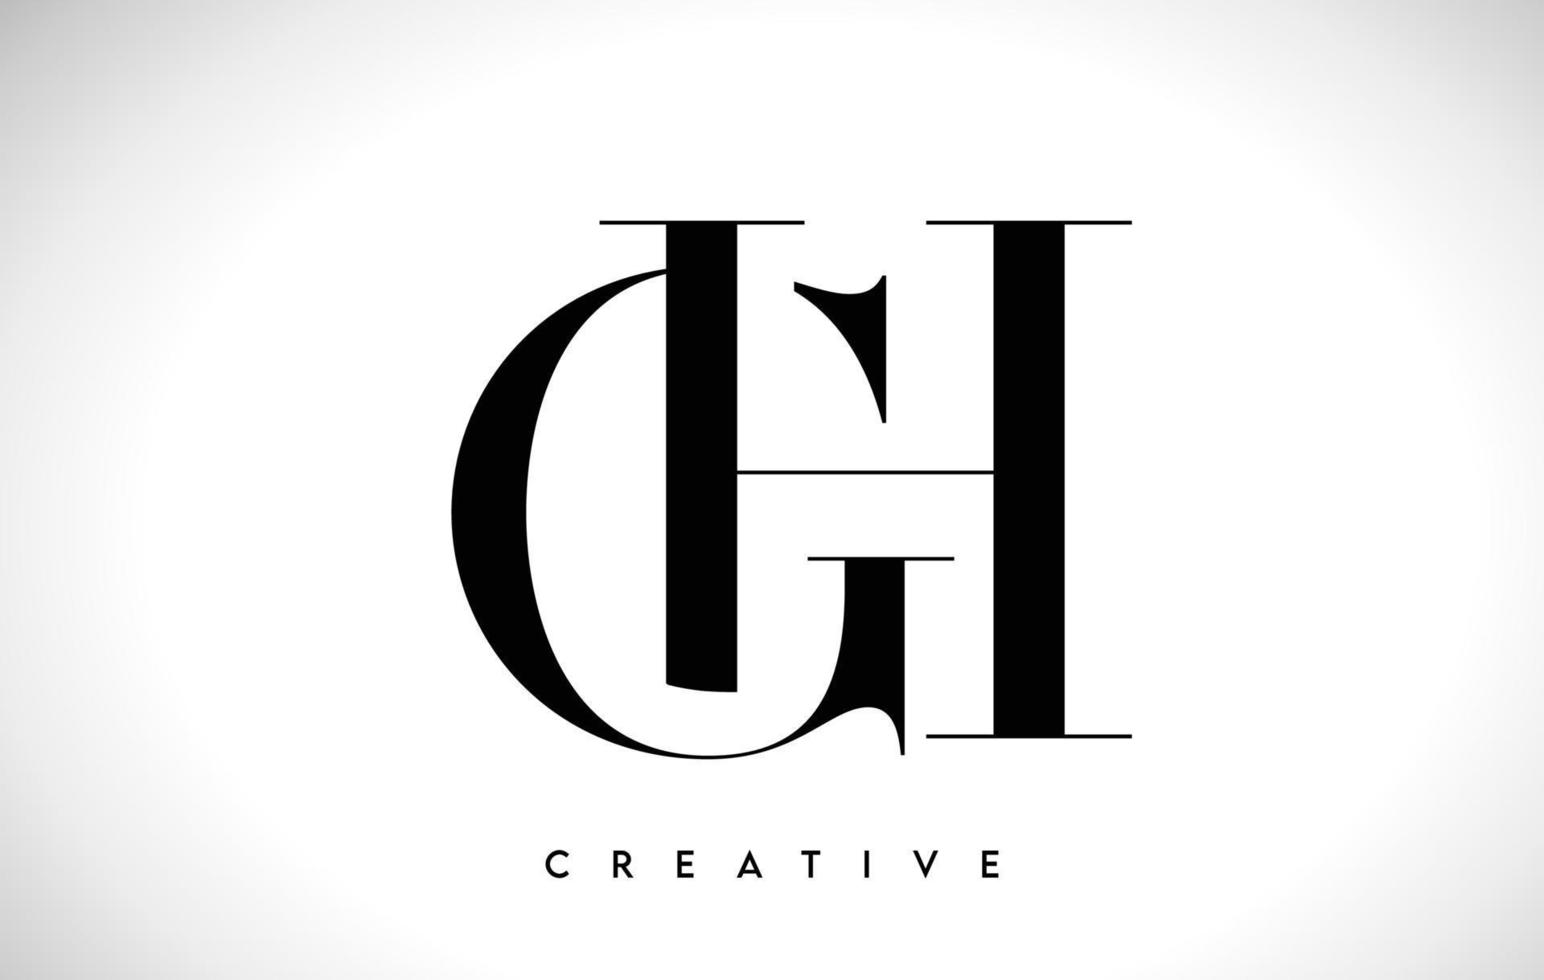 gh design de logotipo de carta artística com fonte serif em cores preto e branco ilustração vetorial vetor